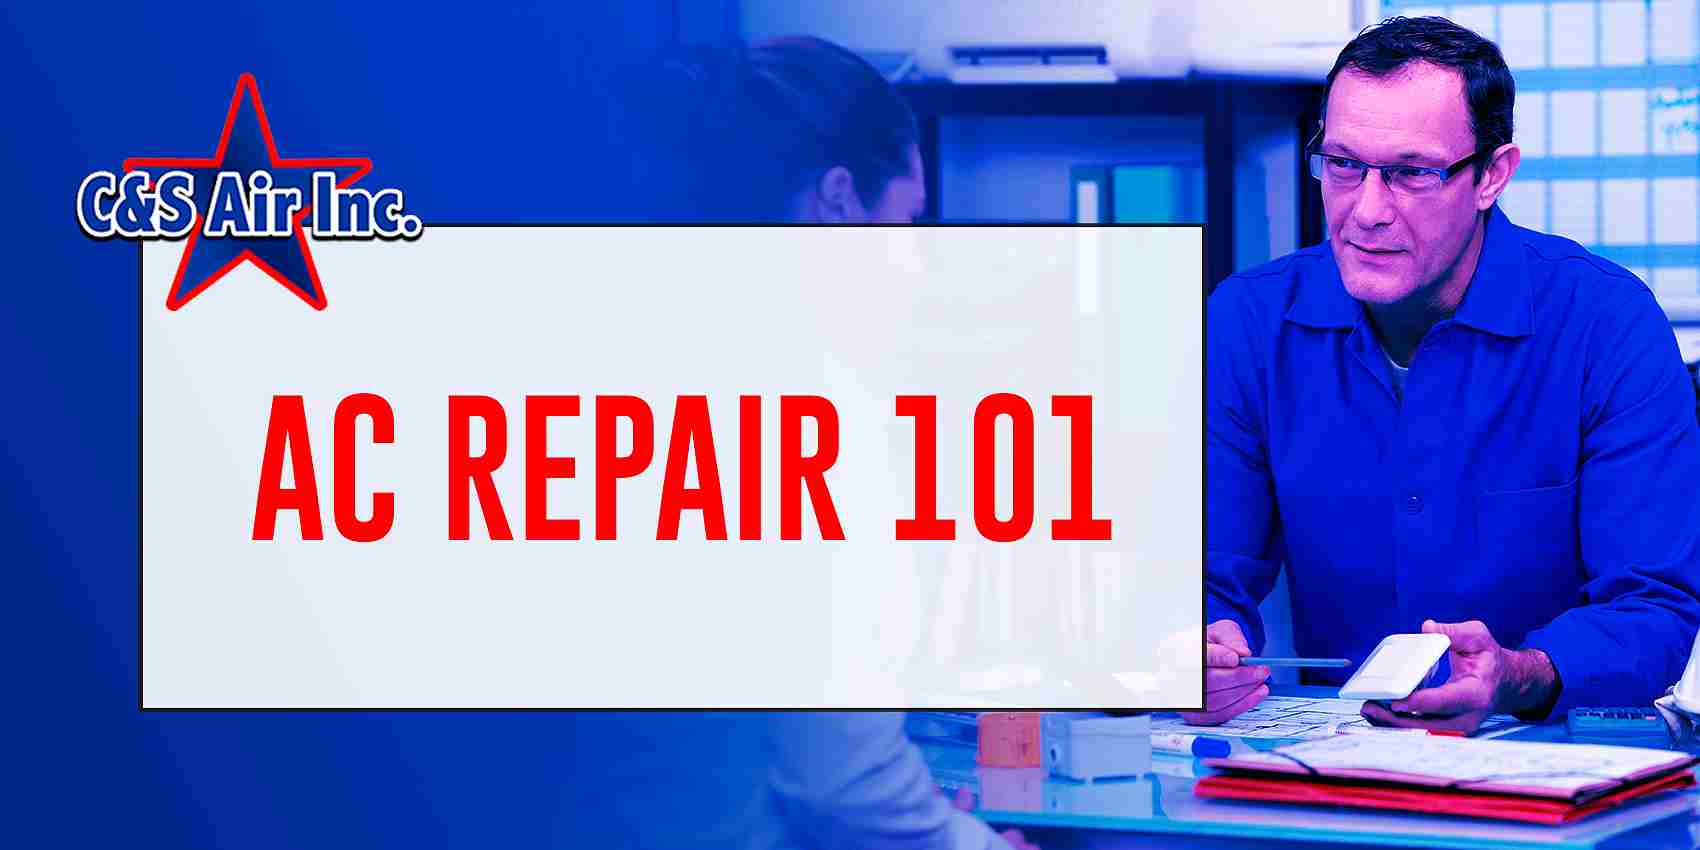 c&s air ac repair 101